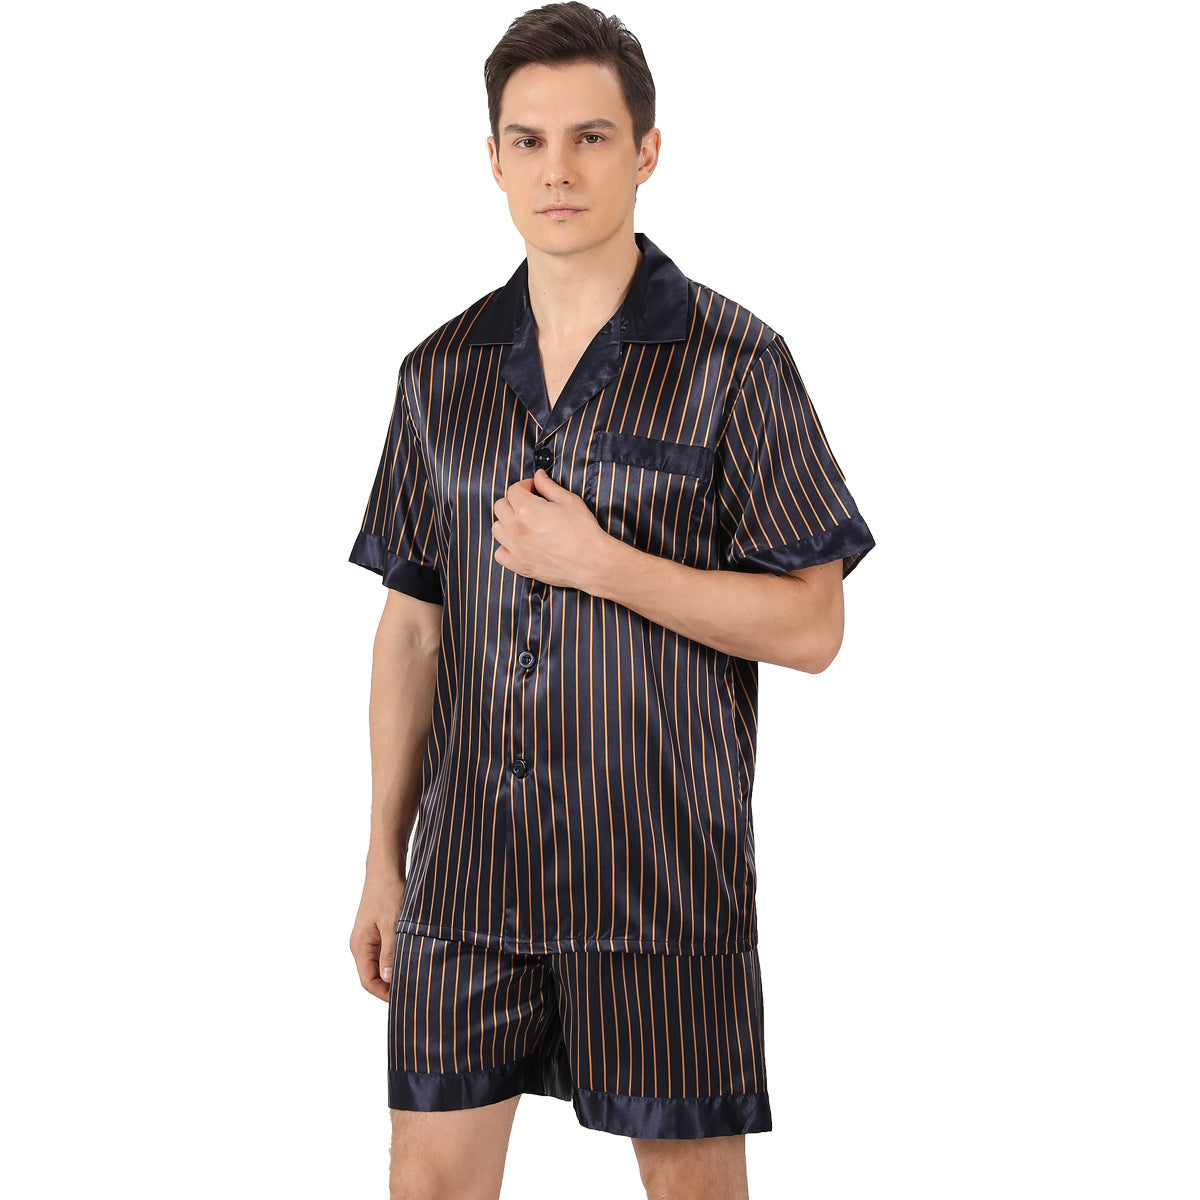 Men's Summer Printed Short-sleeved Shorts Pajamas